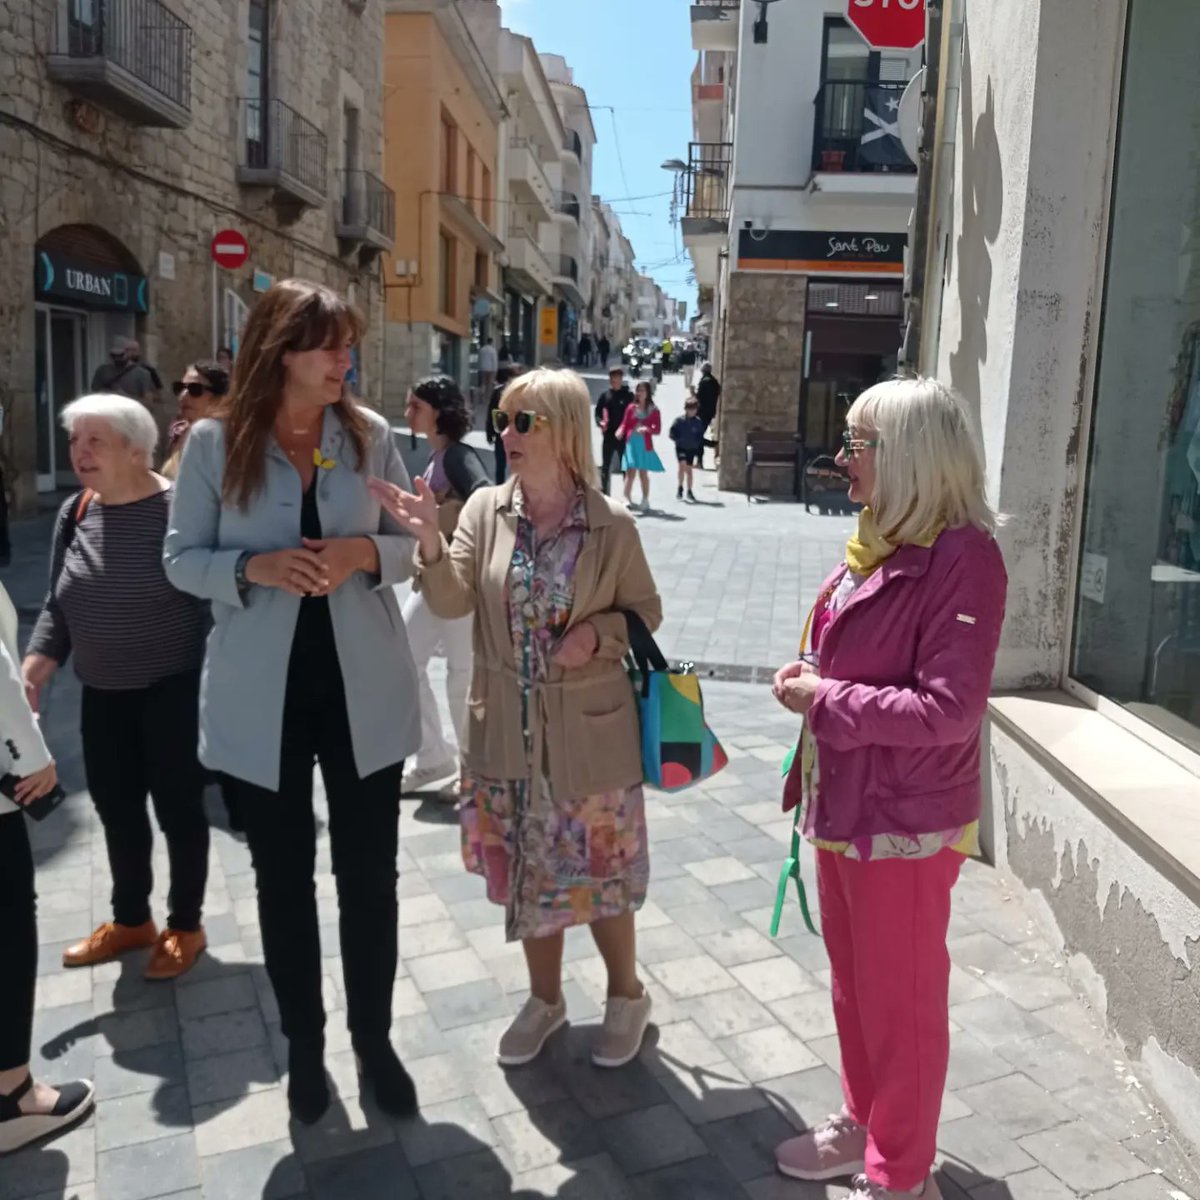 Avui la Presidenta de Junts Laura Borràs @LauraBorras i el Diputat  Francesc Dalmases @francescd han visitat el Triumvirat mediterrani de l'Escala. Molt agraïts per la visita.
#fempoble #femhojunts #12M #votajunts